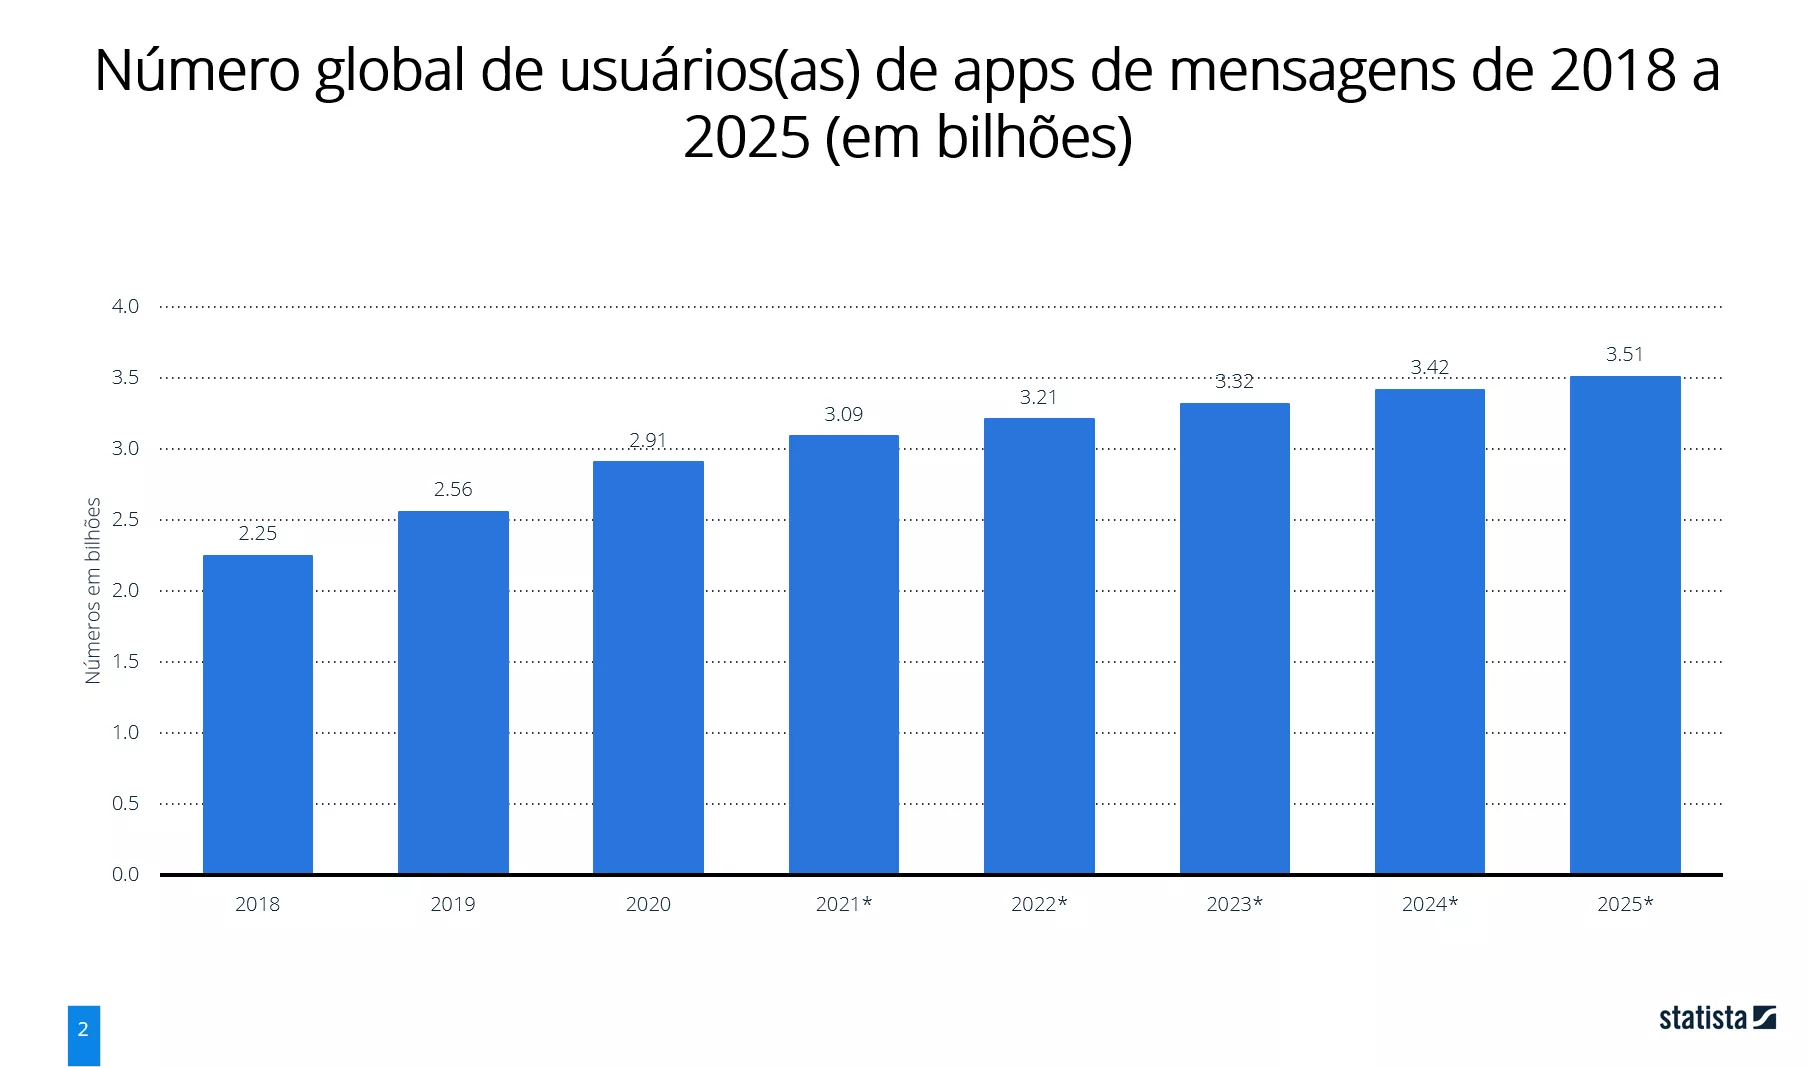 Usuários de apps de mensagens no mundo